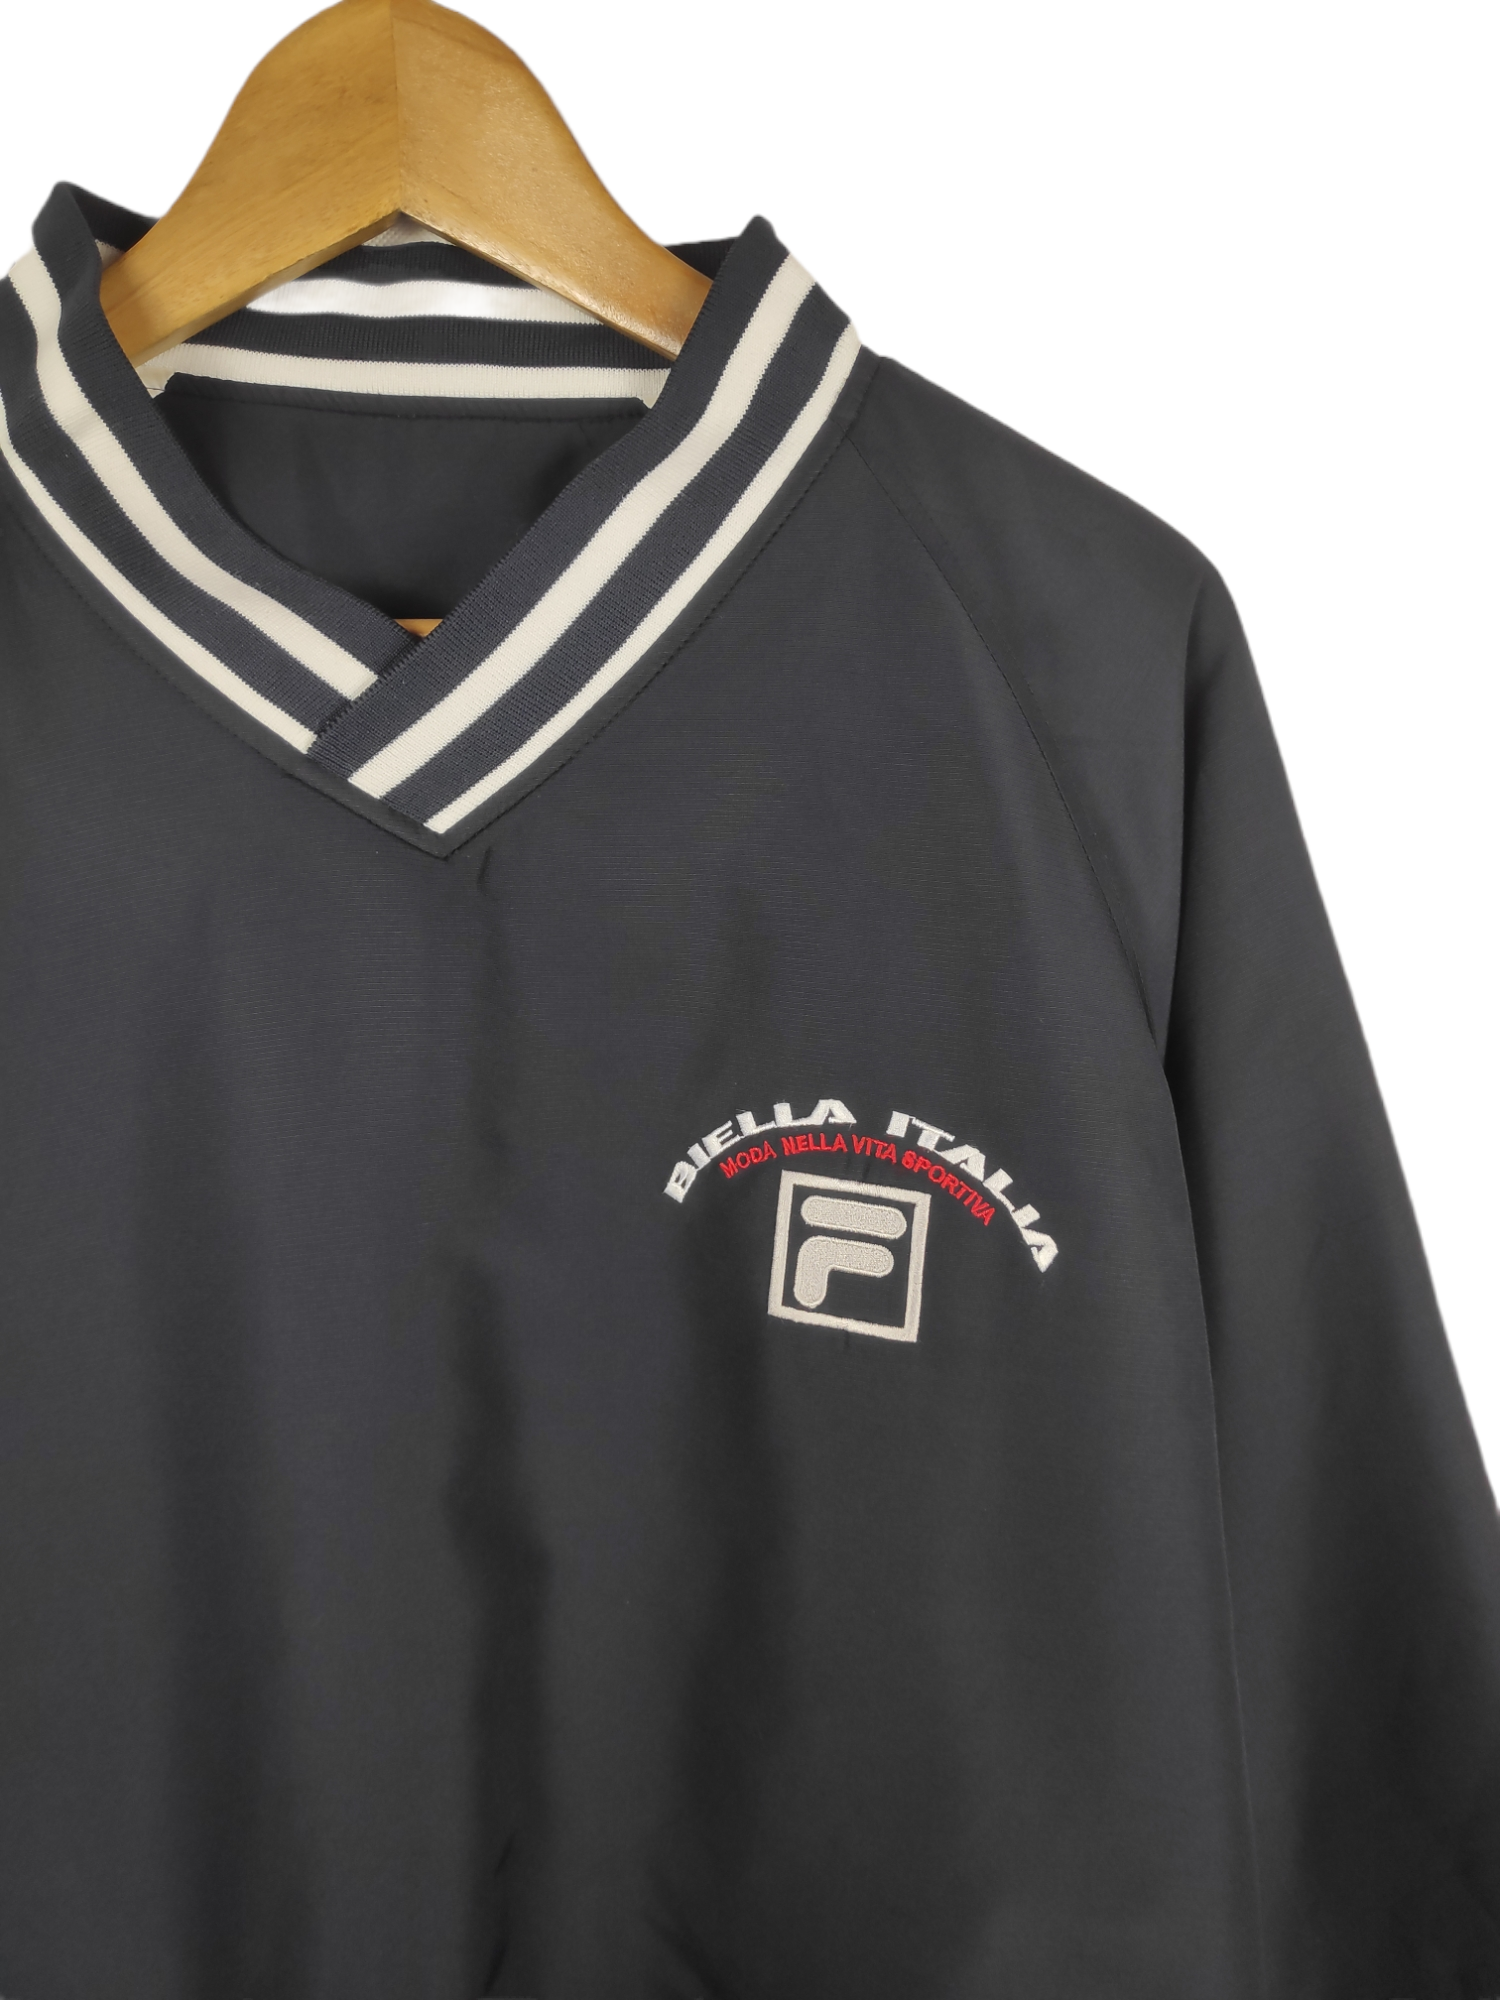 Vintage Fila Italia Gray Sweatshirt Xlarge 90's Fila Biella Italia